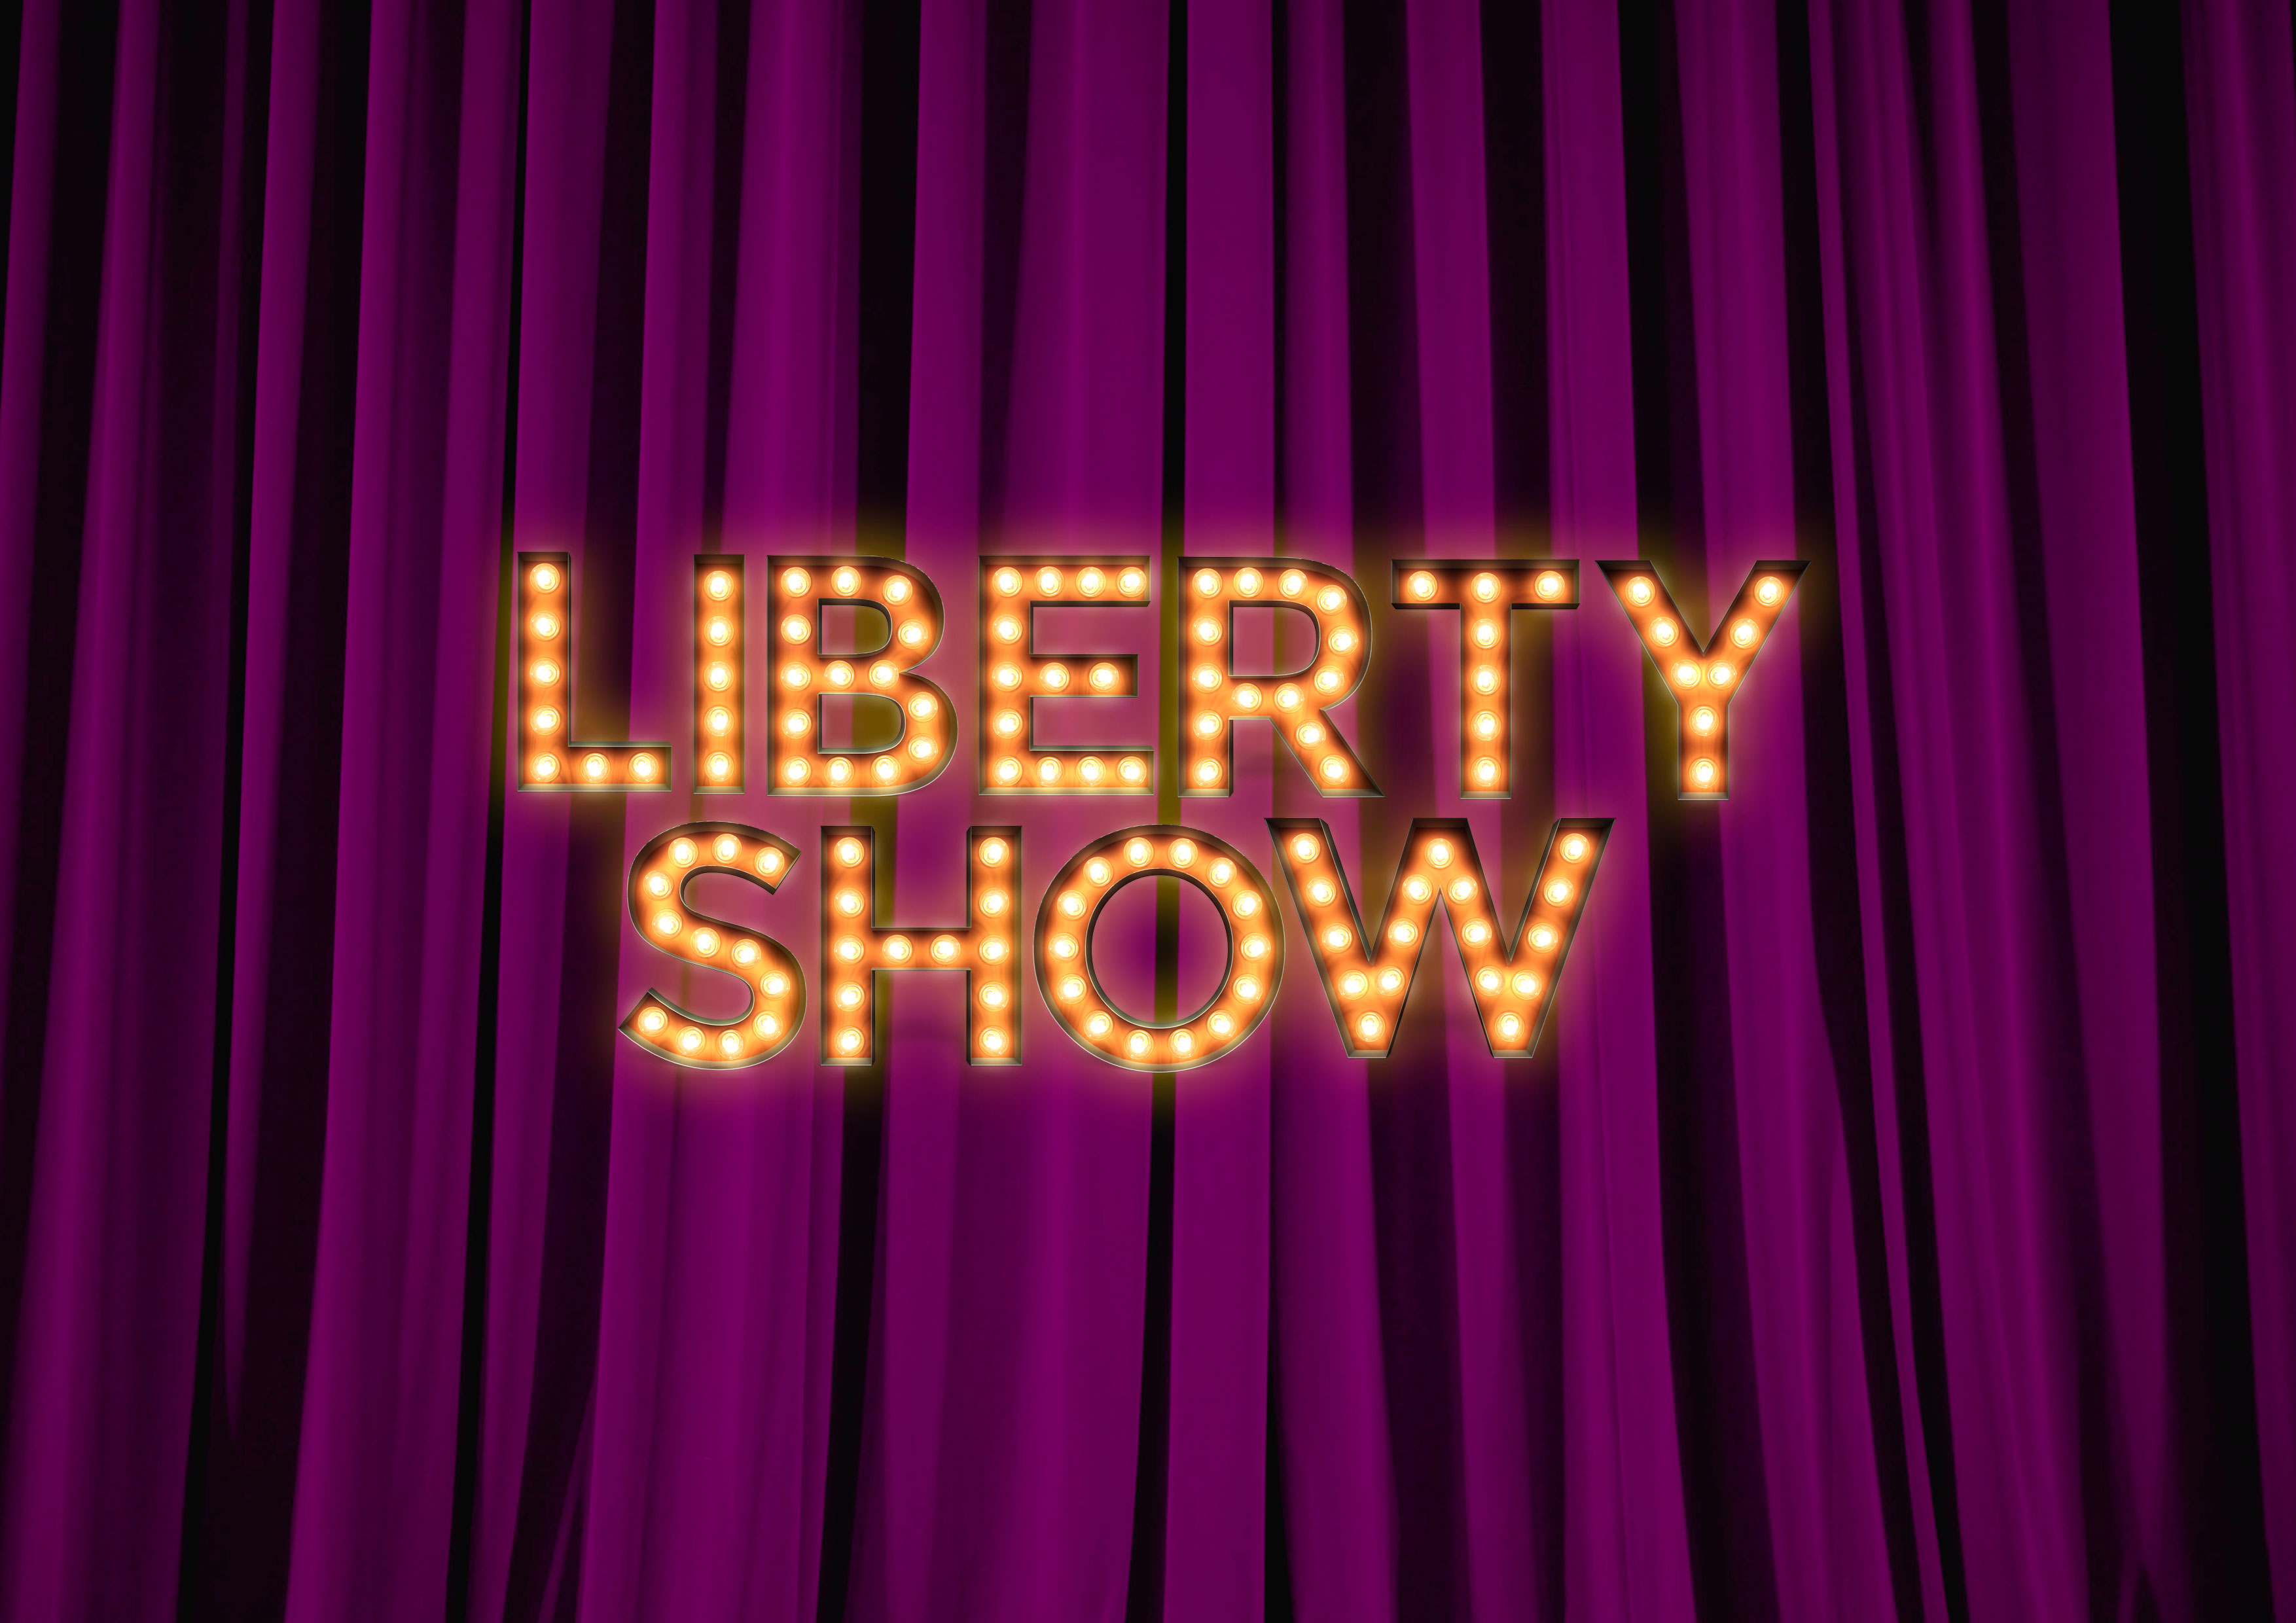 LibertyShow